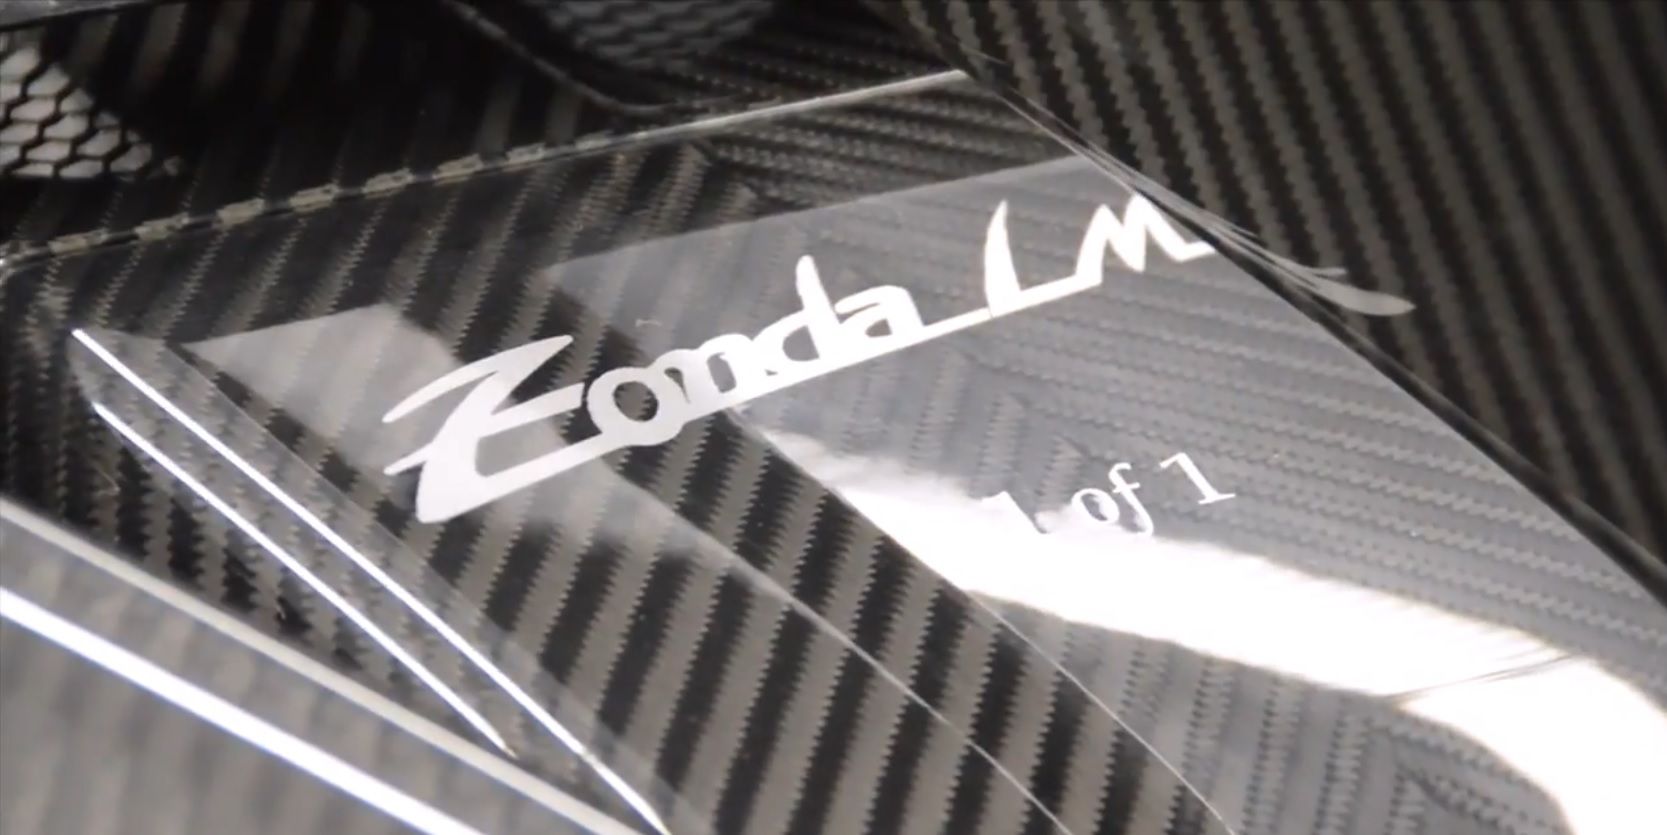 2015 Pagani Zonda 760 LM